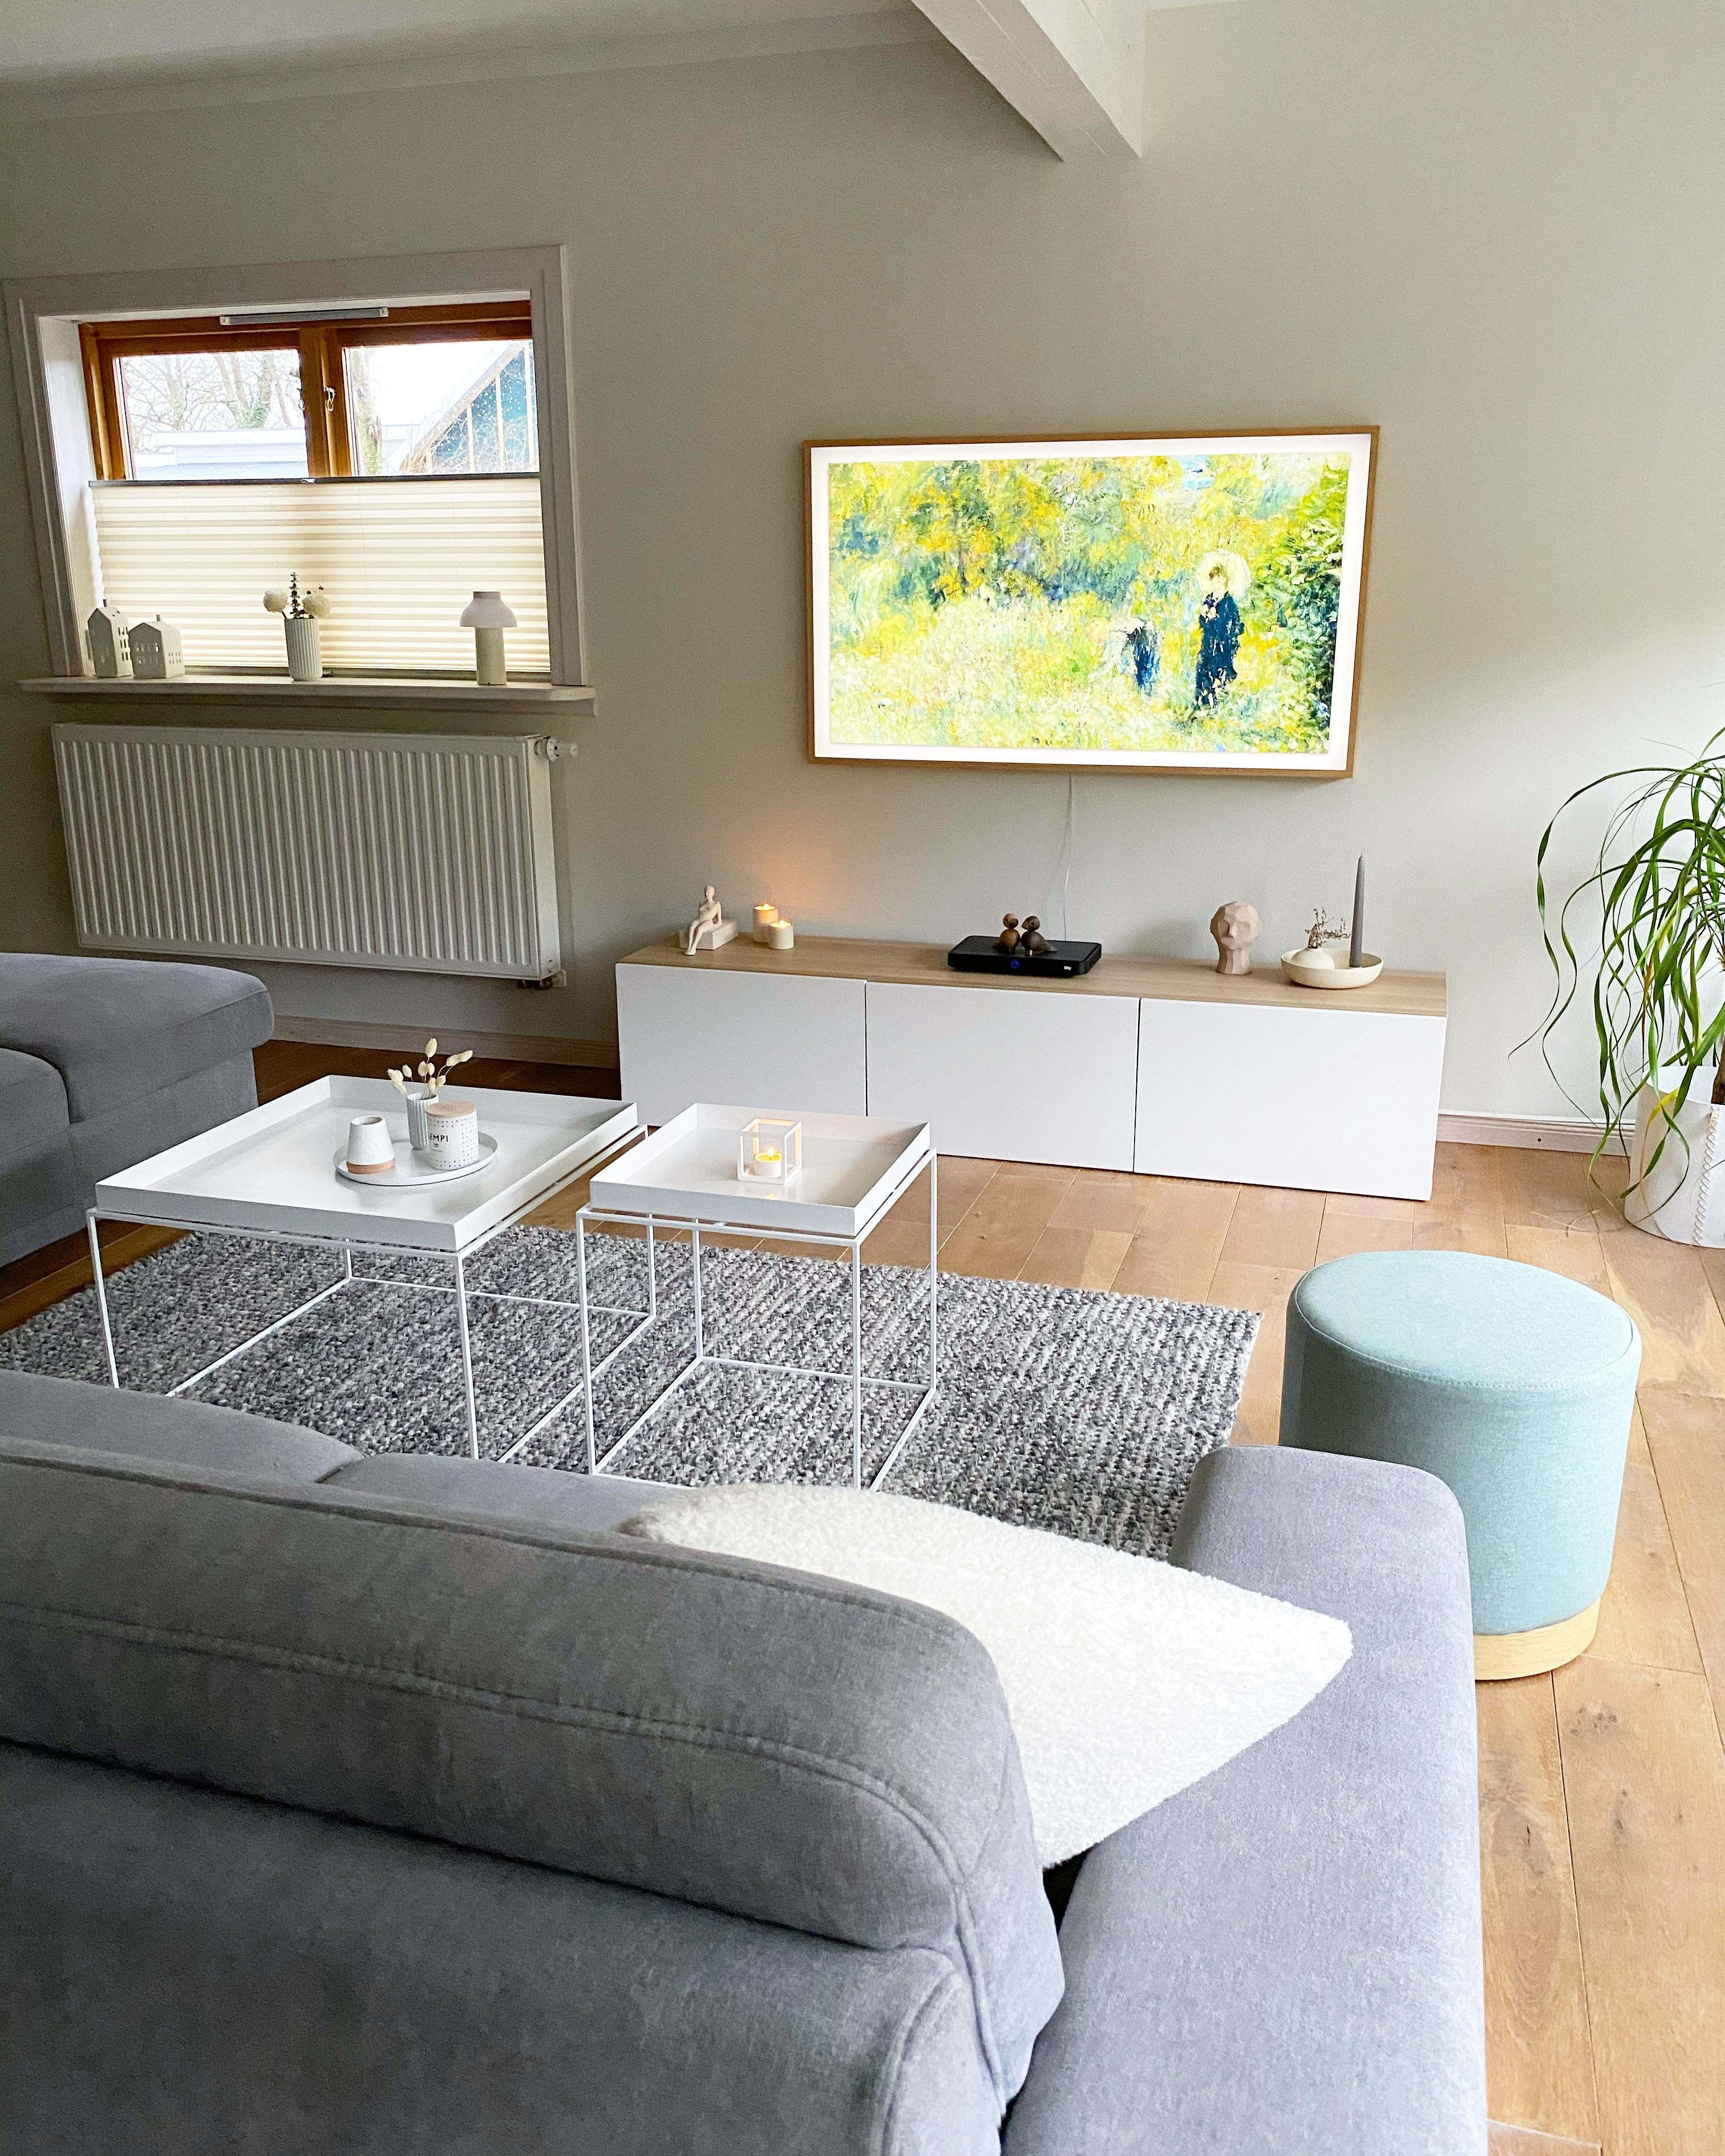 Unsere Kuscheldecke #sofa #wohnzimmer #livingroom